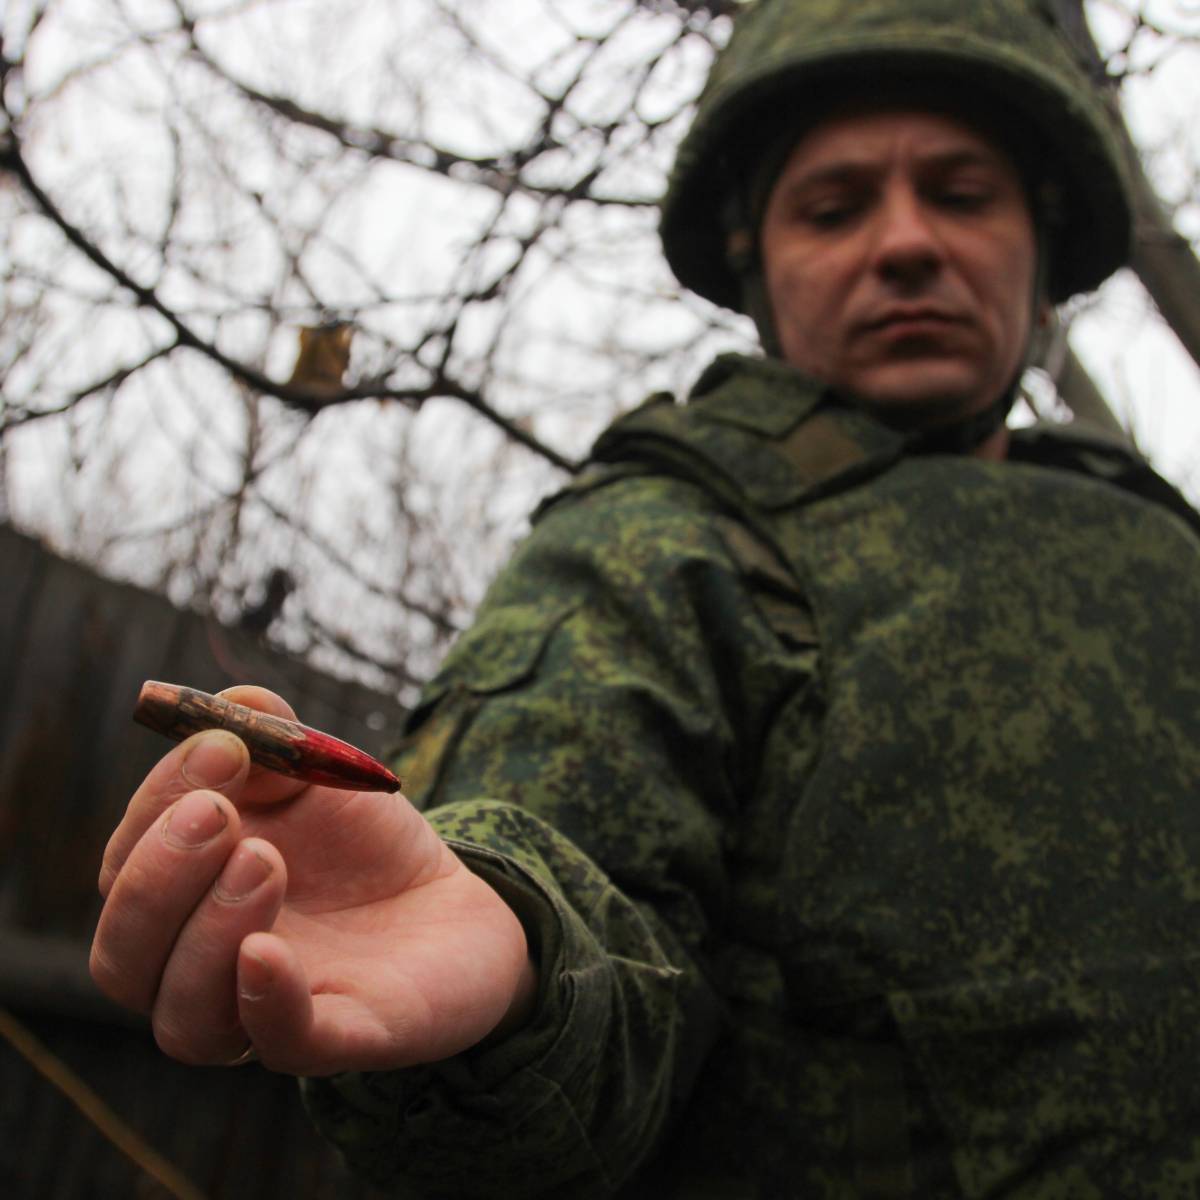 "Это первый сигнал". Почему война в Донбассе скоро закончится?